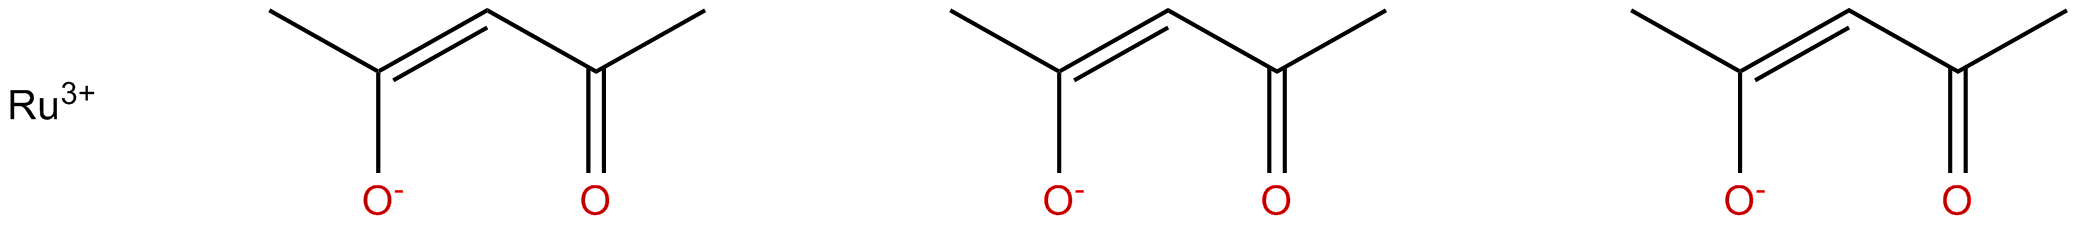 Image of ruthenium (III) acetylacetonate